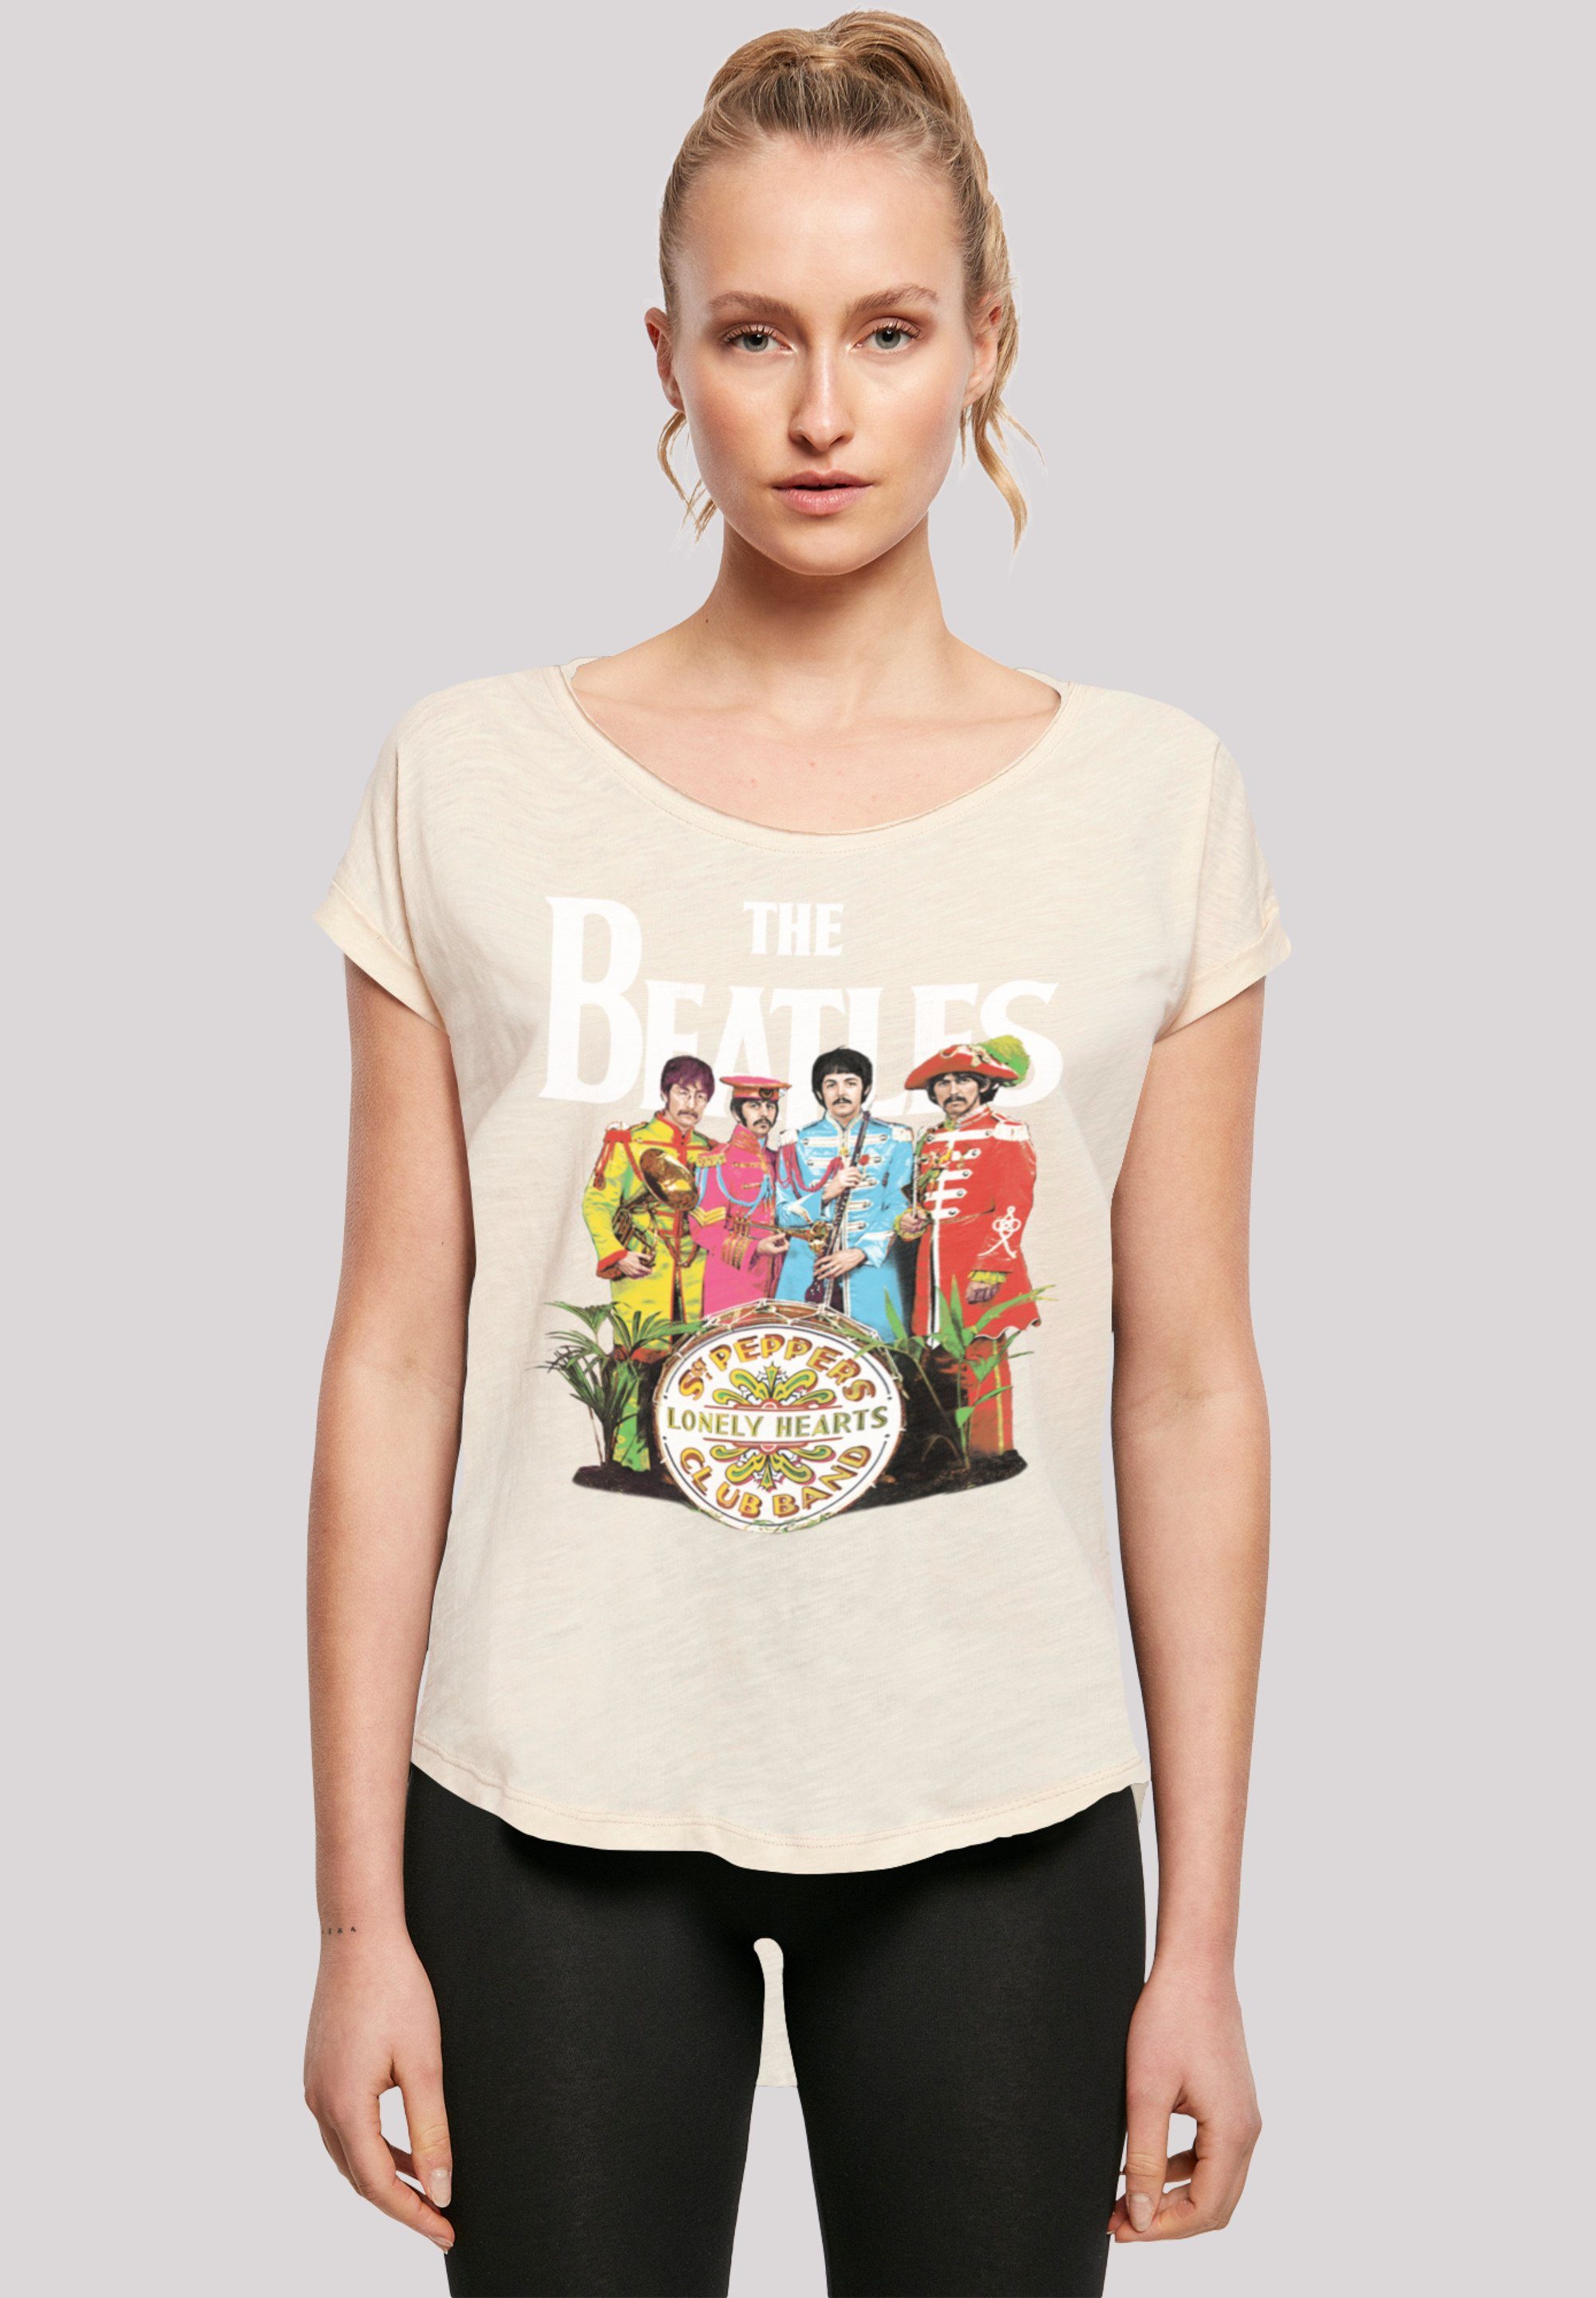 F4NT4STIC T-Shirt The Beatles Band Print, Sgt extra Hinten Pepper Damen Black T-Shirt lang geschnittenes